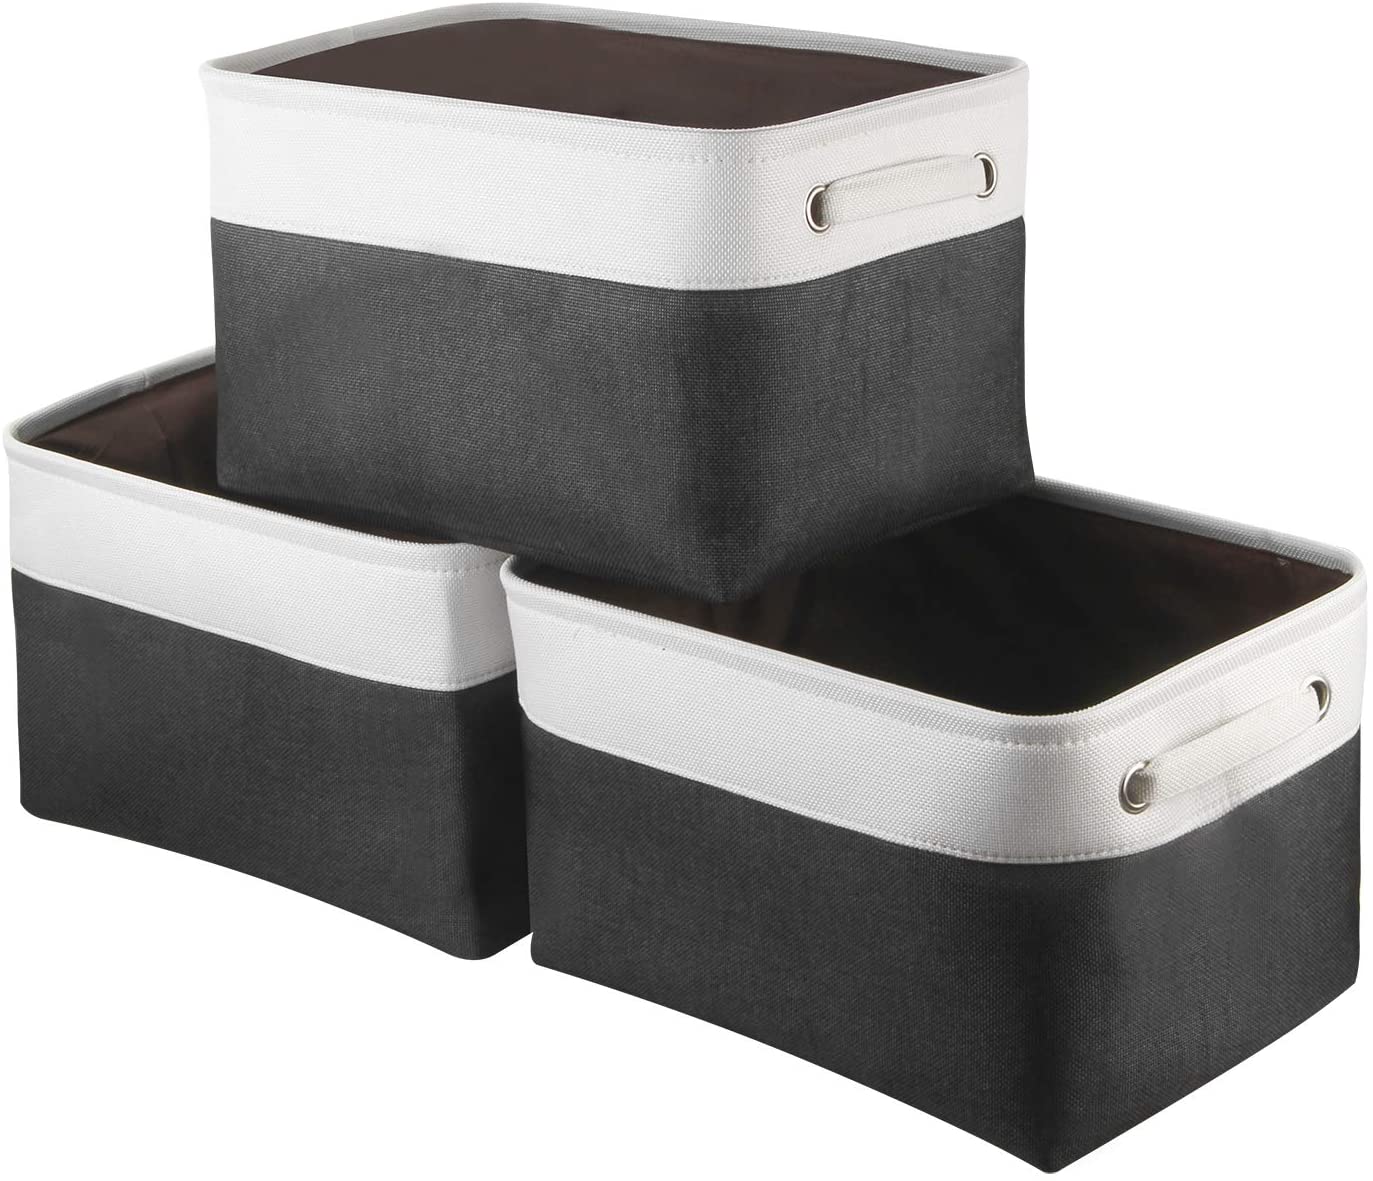 Awekris Large Storage Basket Bin Set [3-Pack] (Grey) (Black and White)